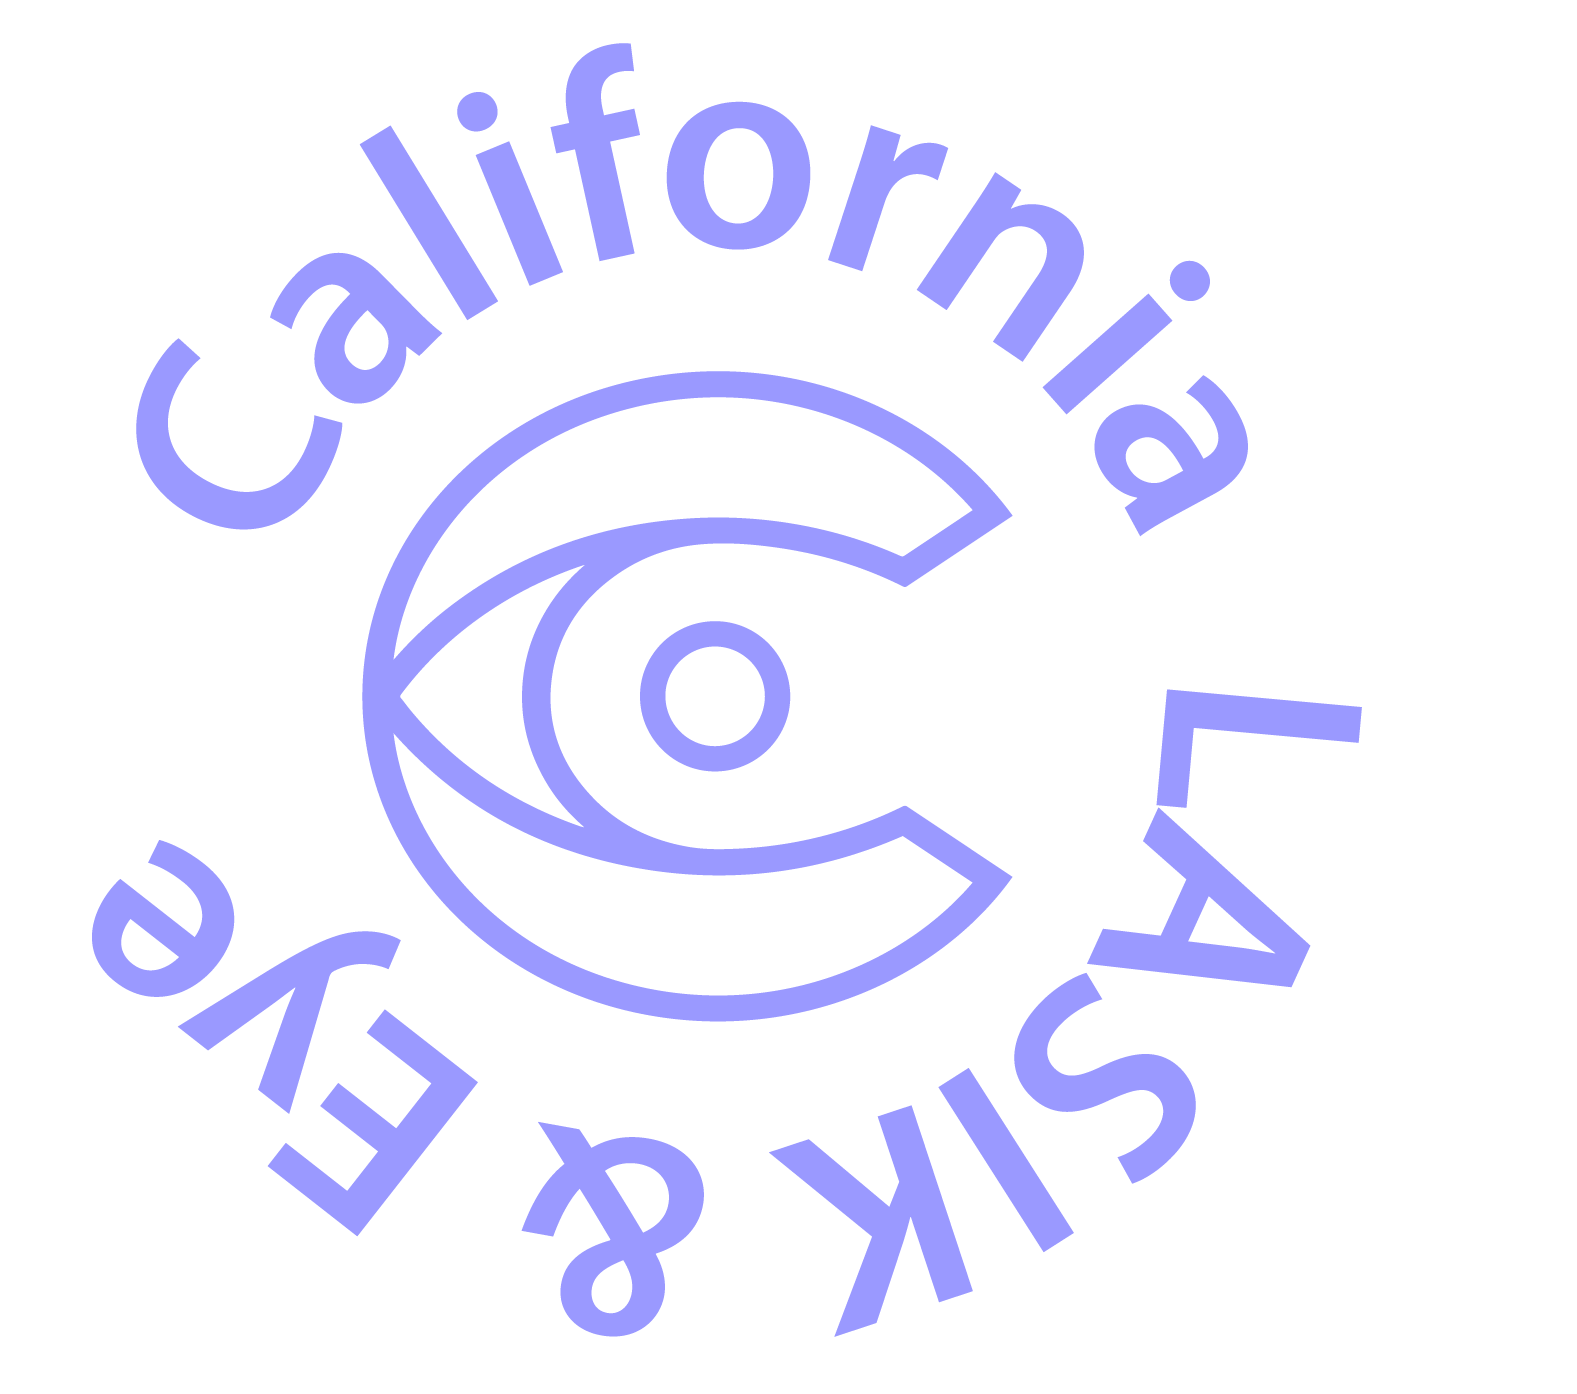 California LASIK and Eye global divider logo